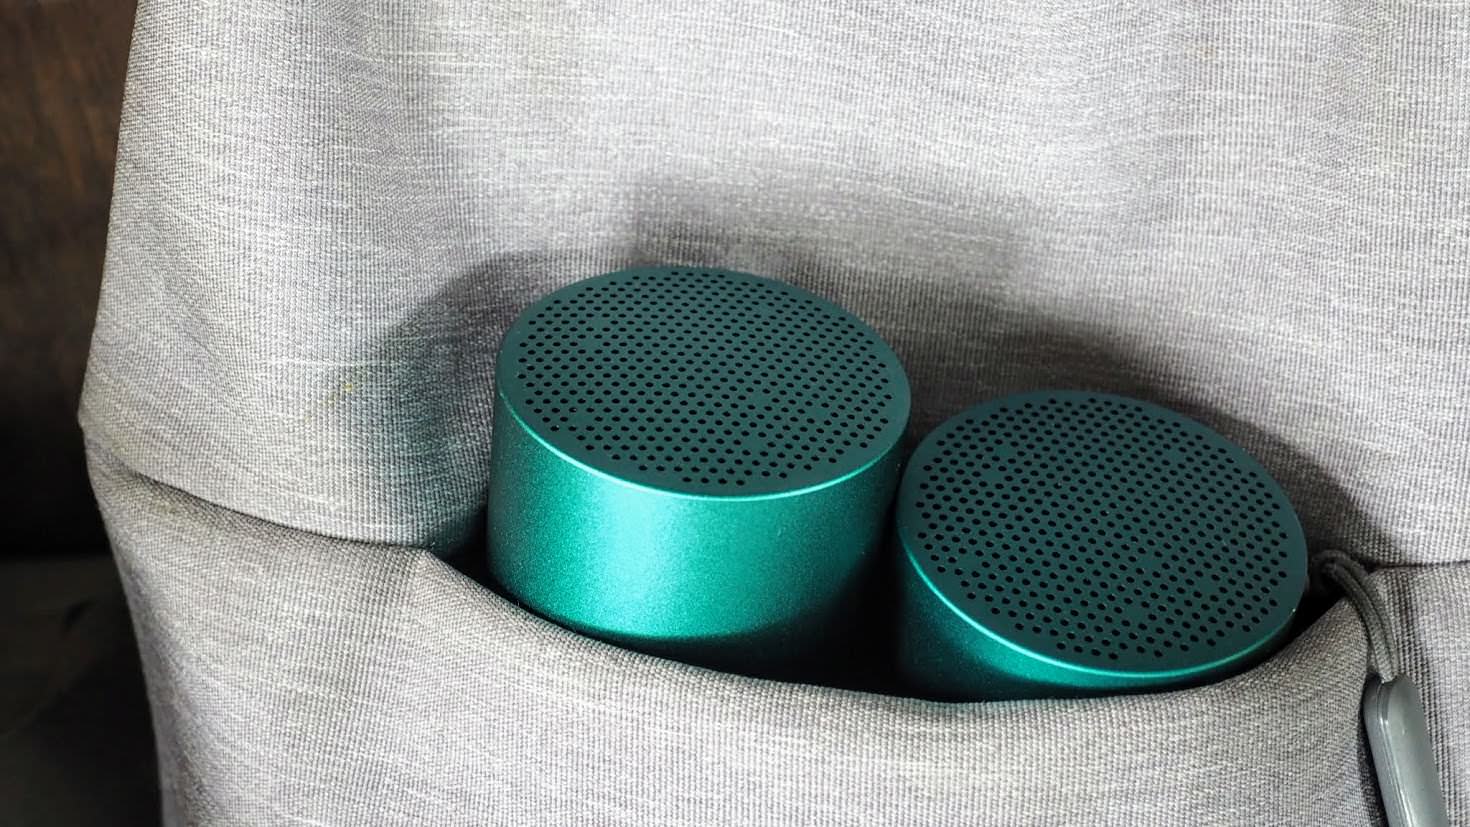 รีวิว HUAWEI Mini Speaker ลำโพงจิ๋วเล็กกว่าฝ่ามือ เสียงเกินขนาดตัว ซื้อคู่คุ้มกว่า 11